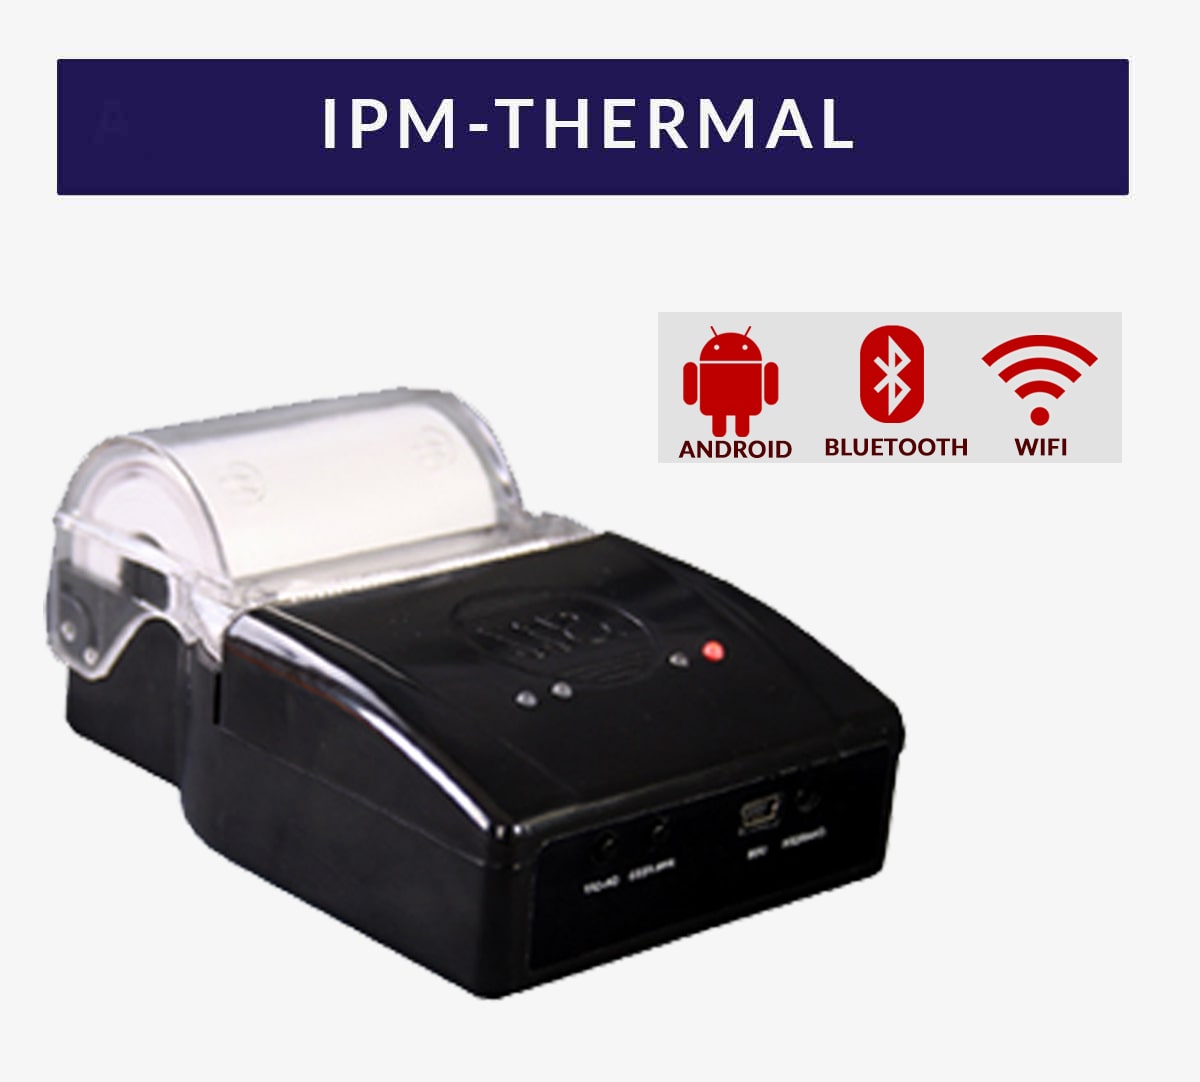 USB Thermal printer India